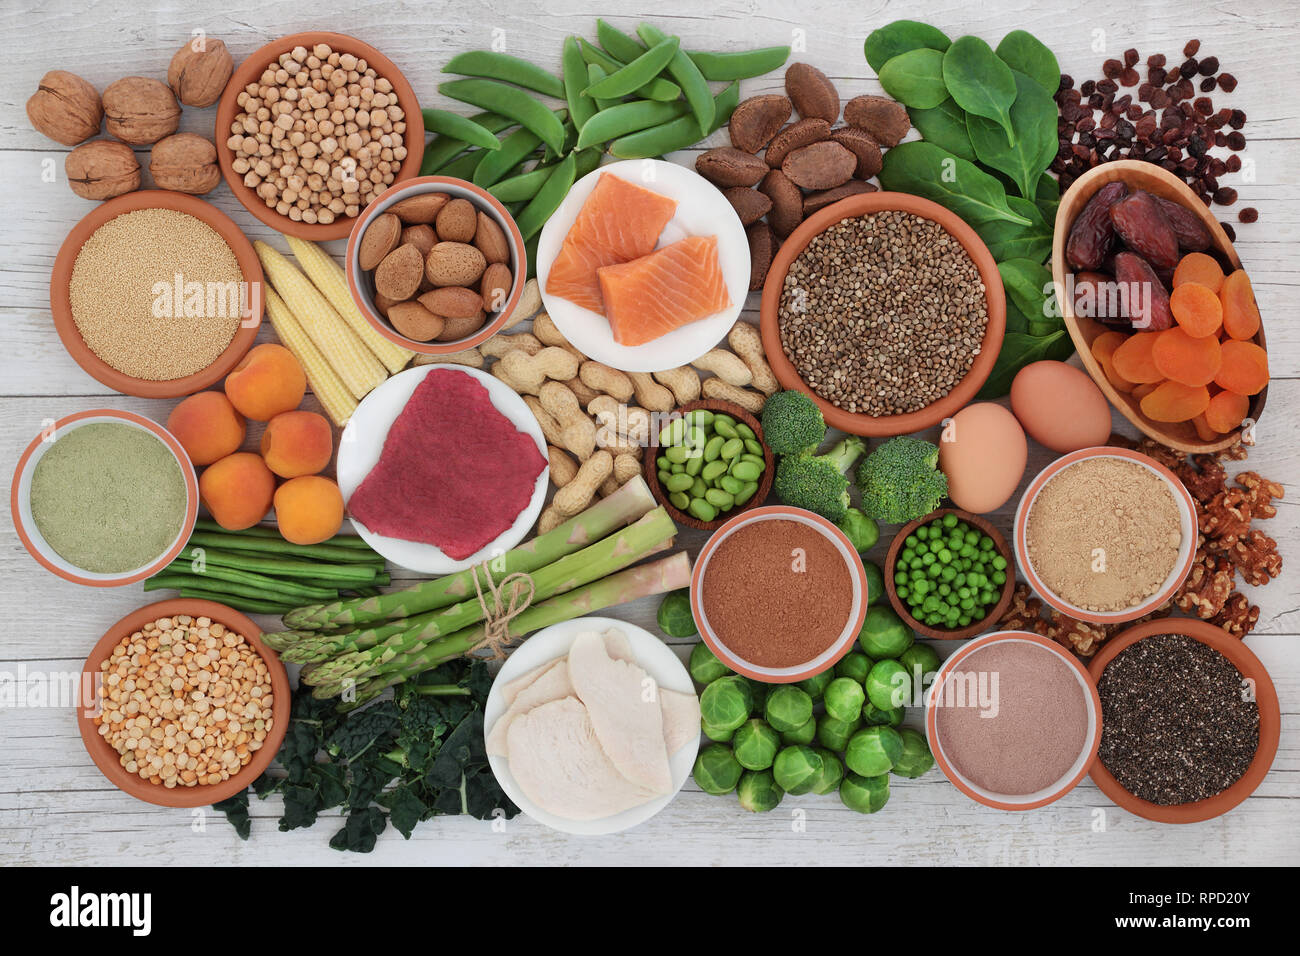 Health Food high in Protein mit Fleisch, Fisch, Milchprodukte, Hülsenfrüchte, Gemüse, Trockenobst, Getreide, zu ergänzen, zu Pulver, Samen und Nüsse. Stockfoto